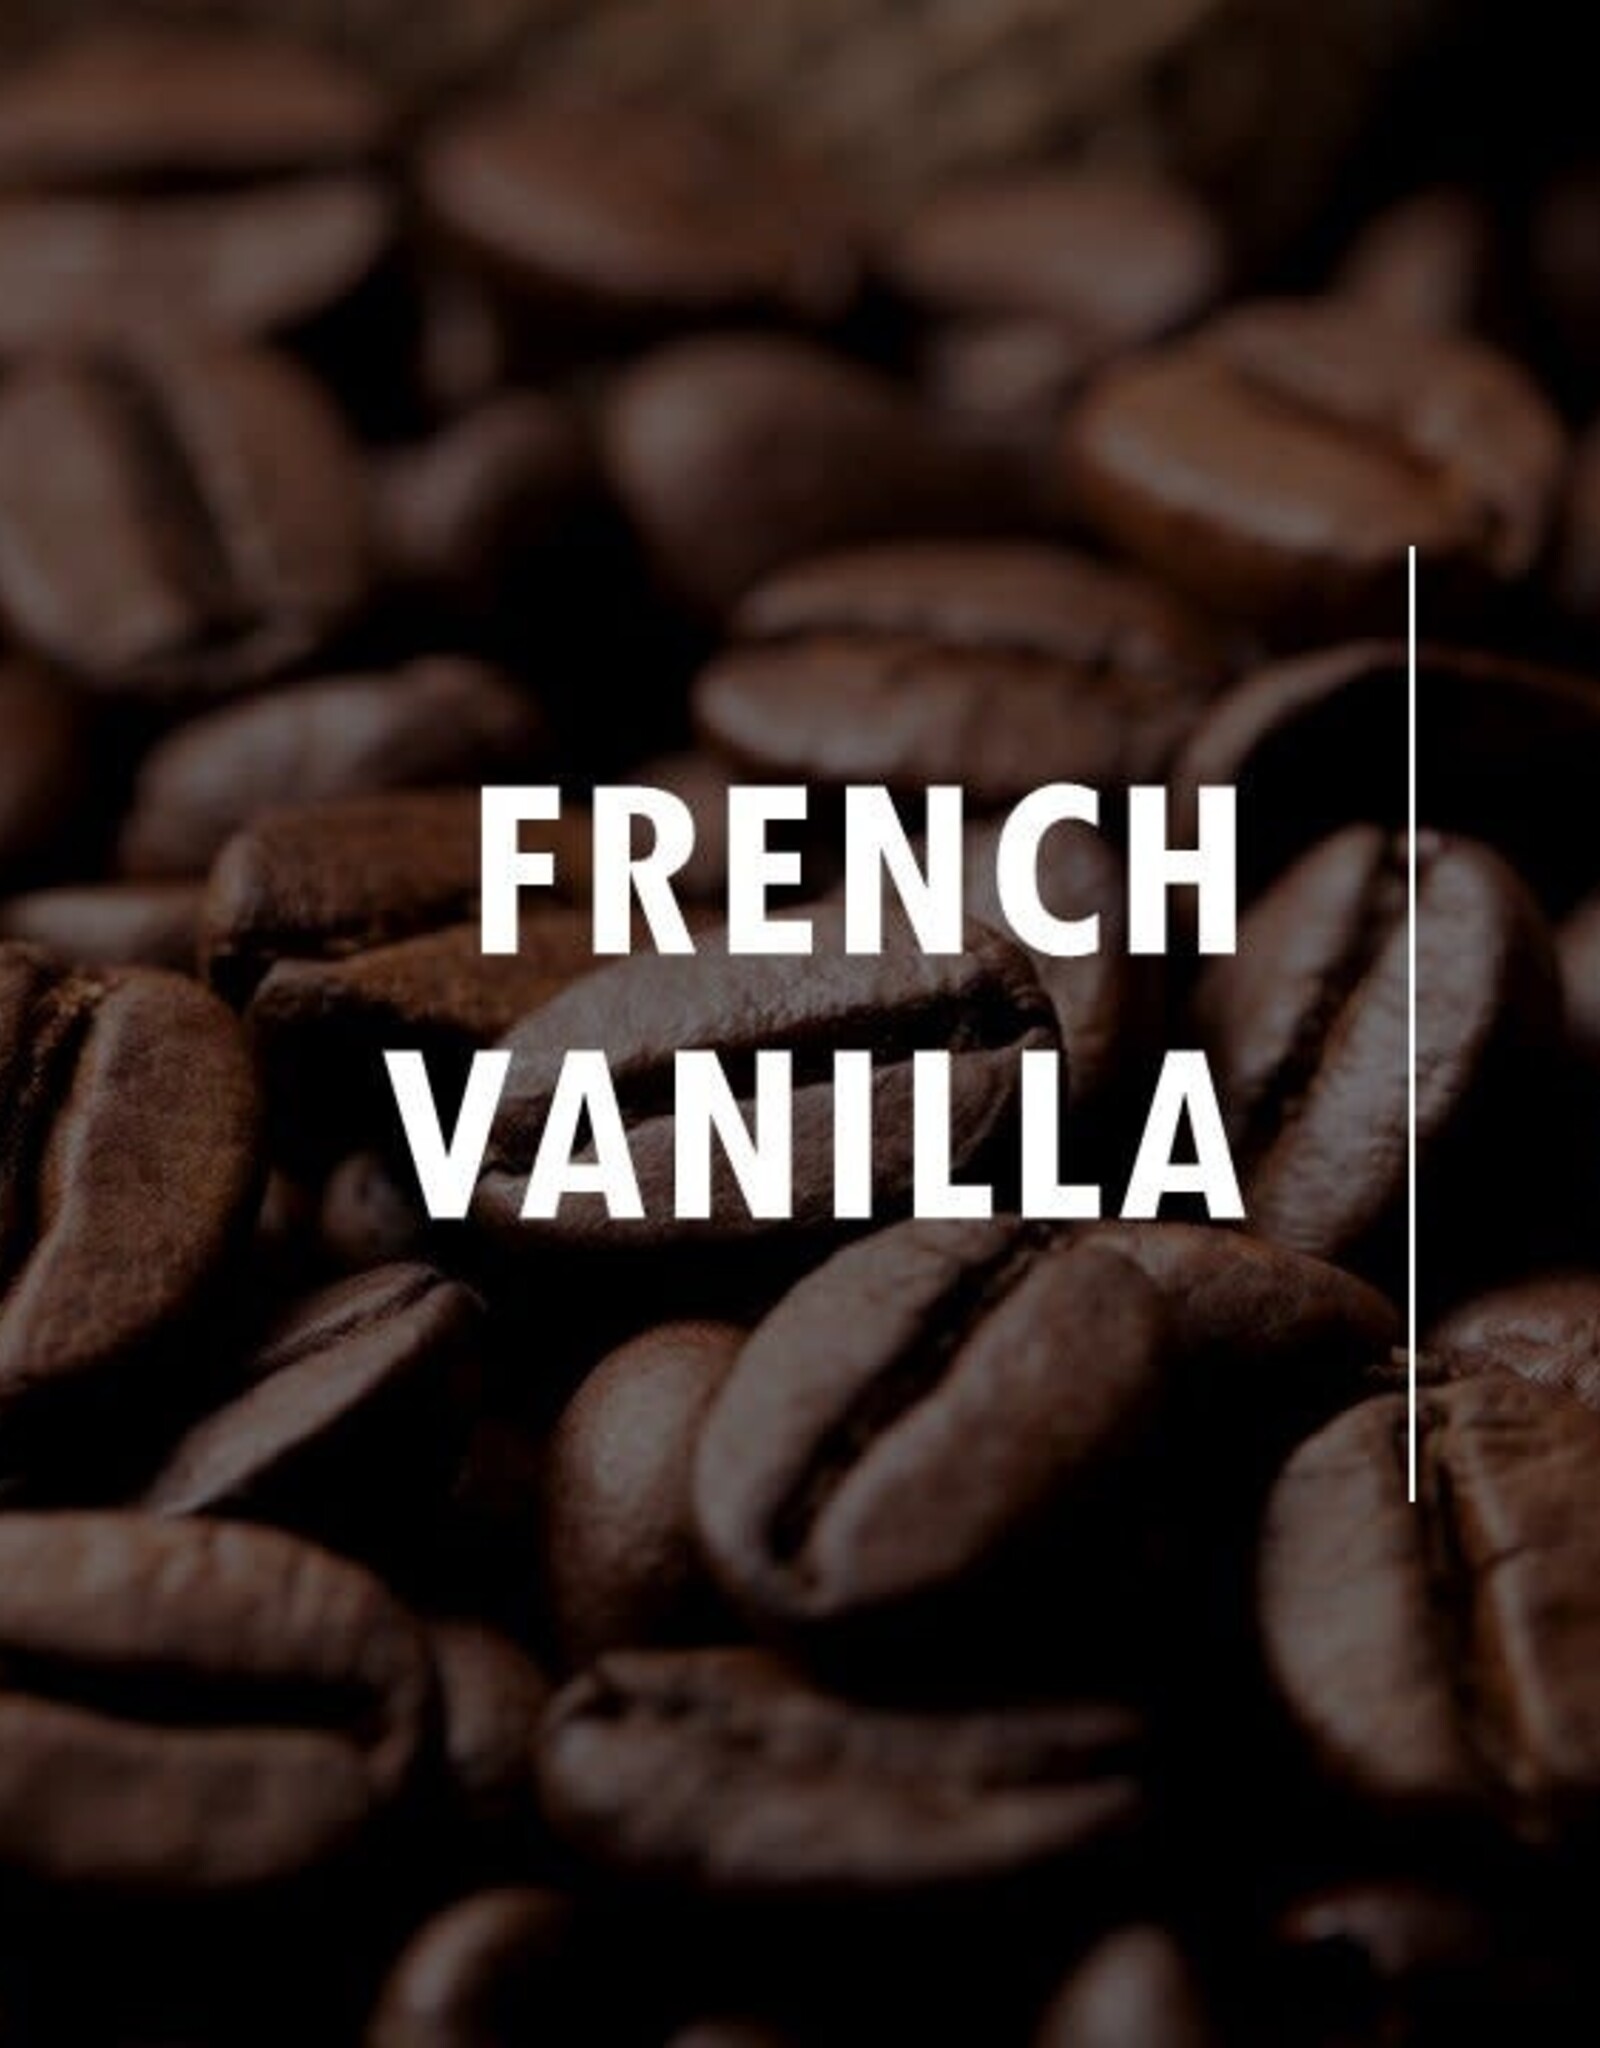 French Vanilla - Whole Bean